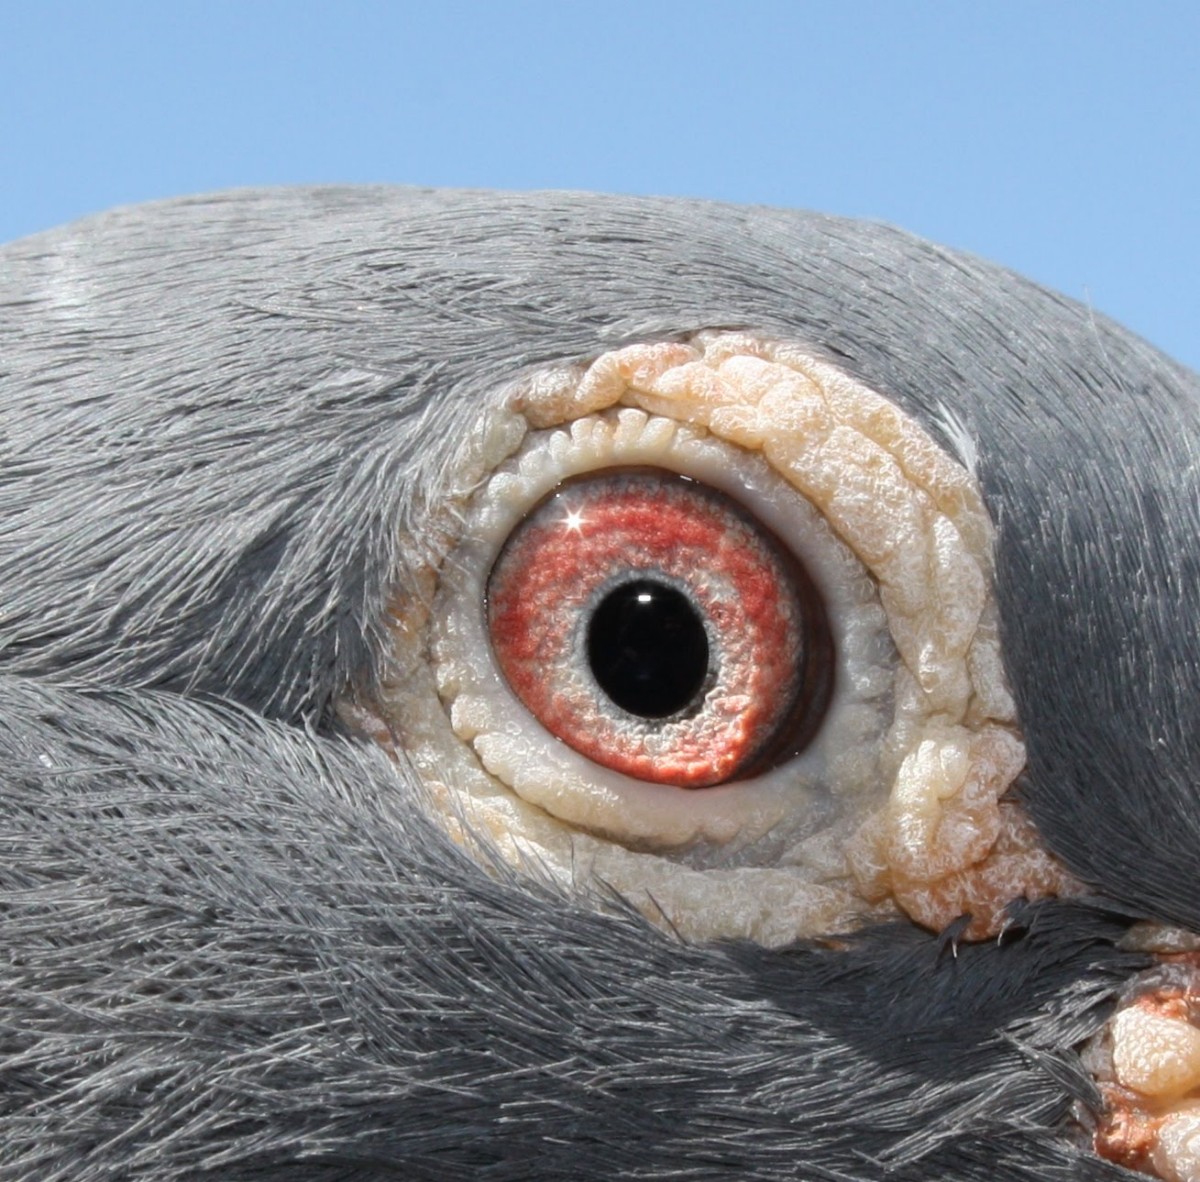 Teoria sobre o olho do pombo